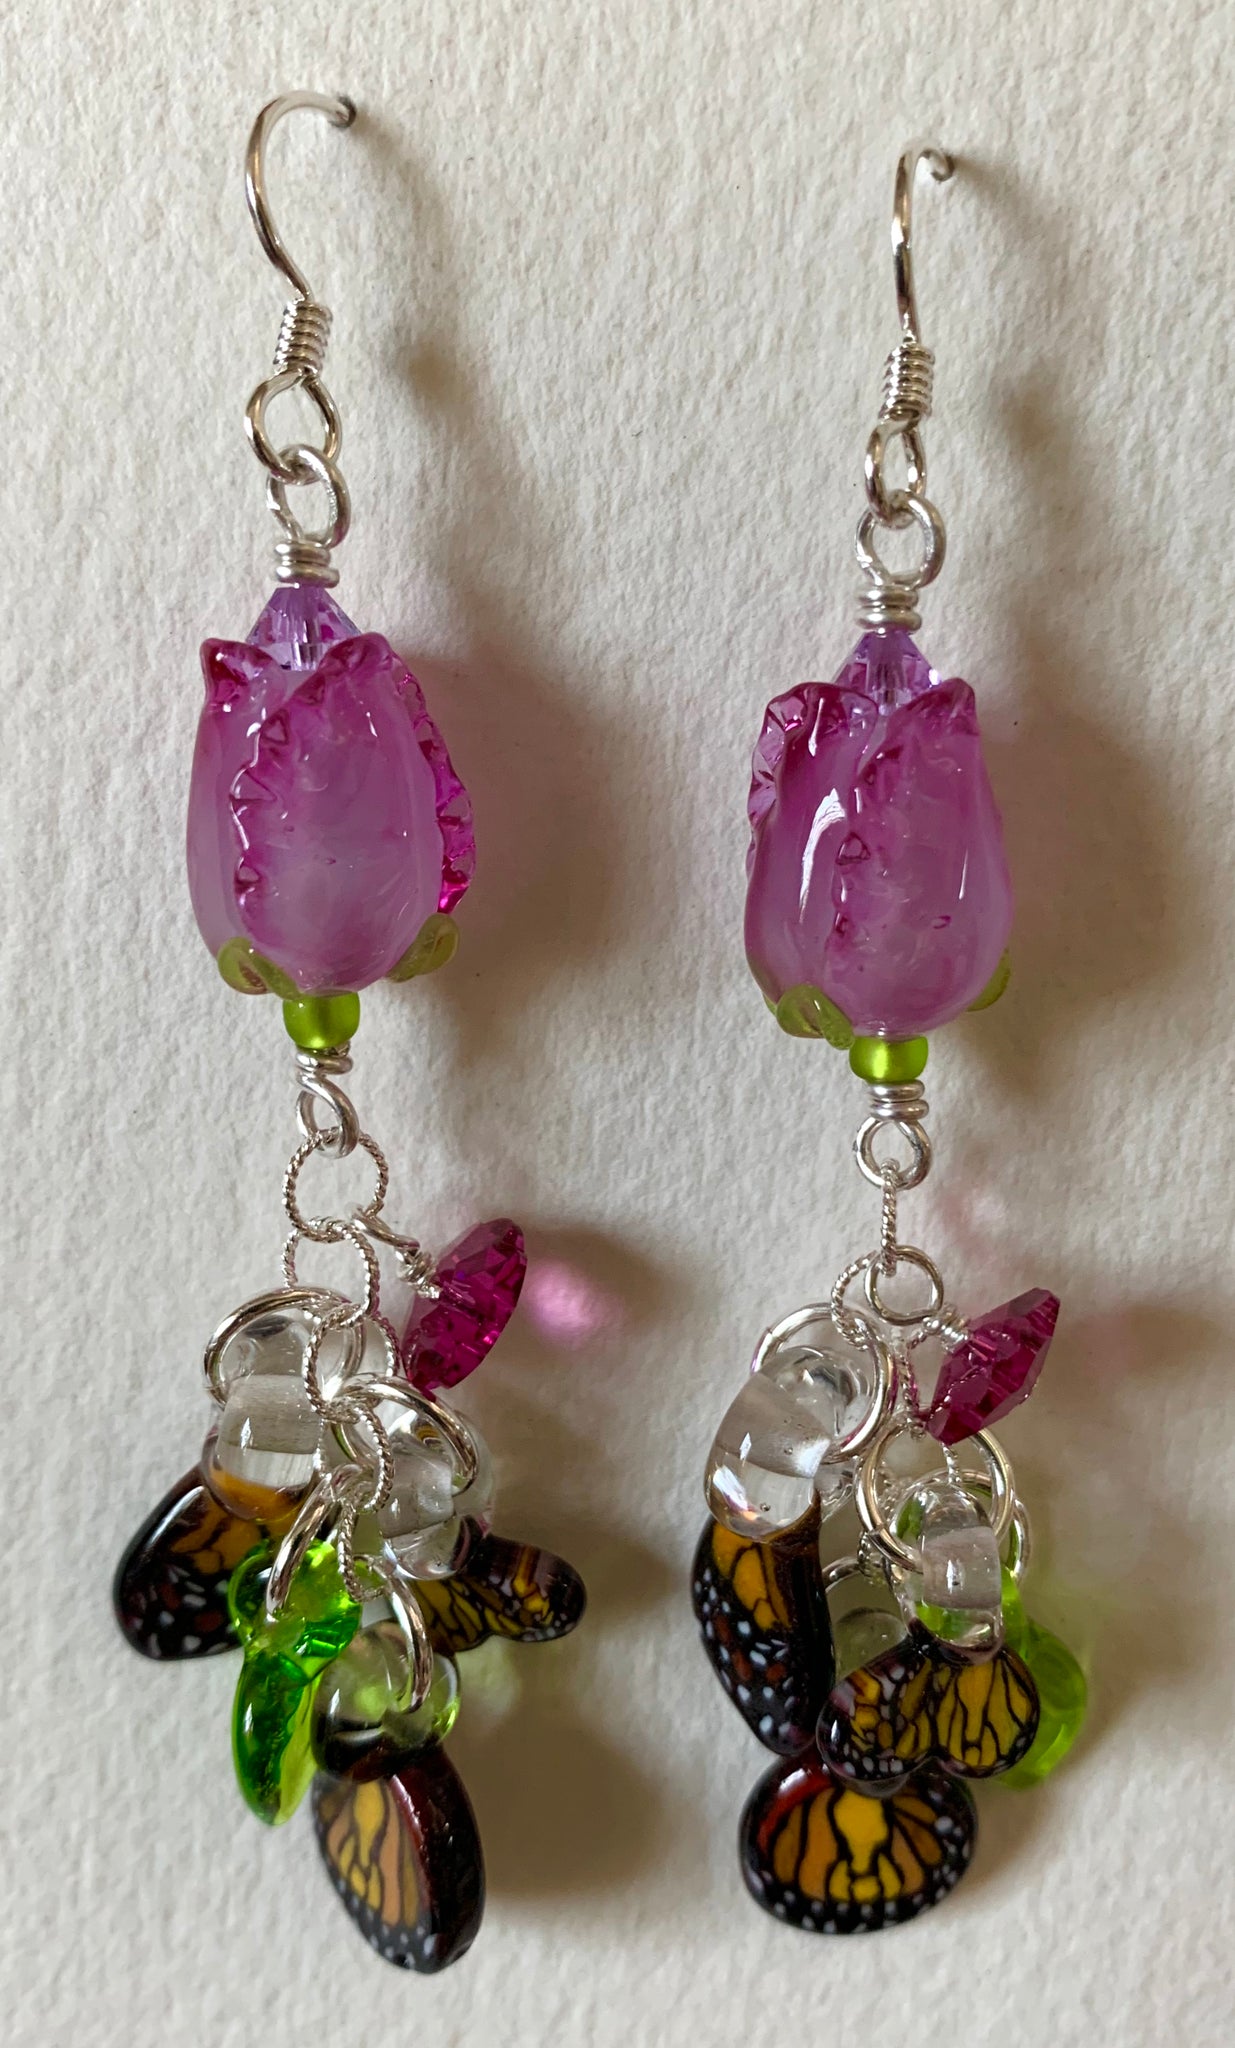 Flower earrings with butterfly wings